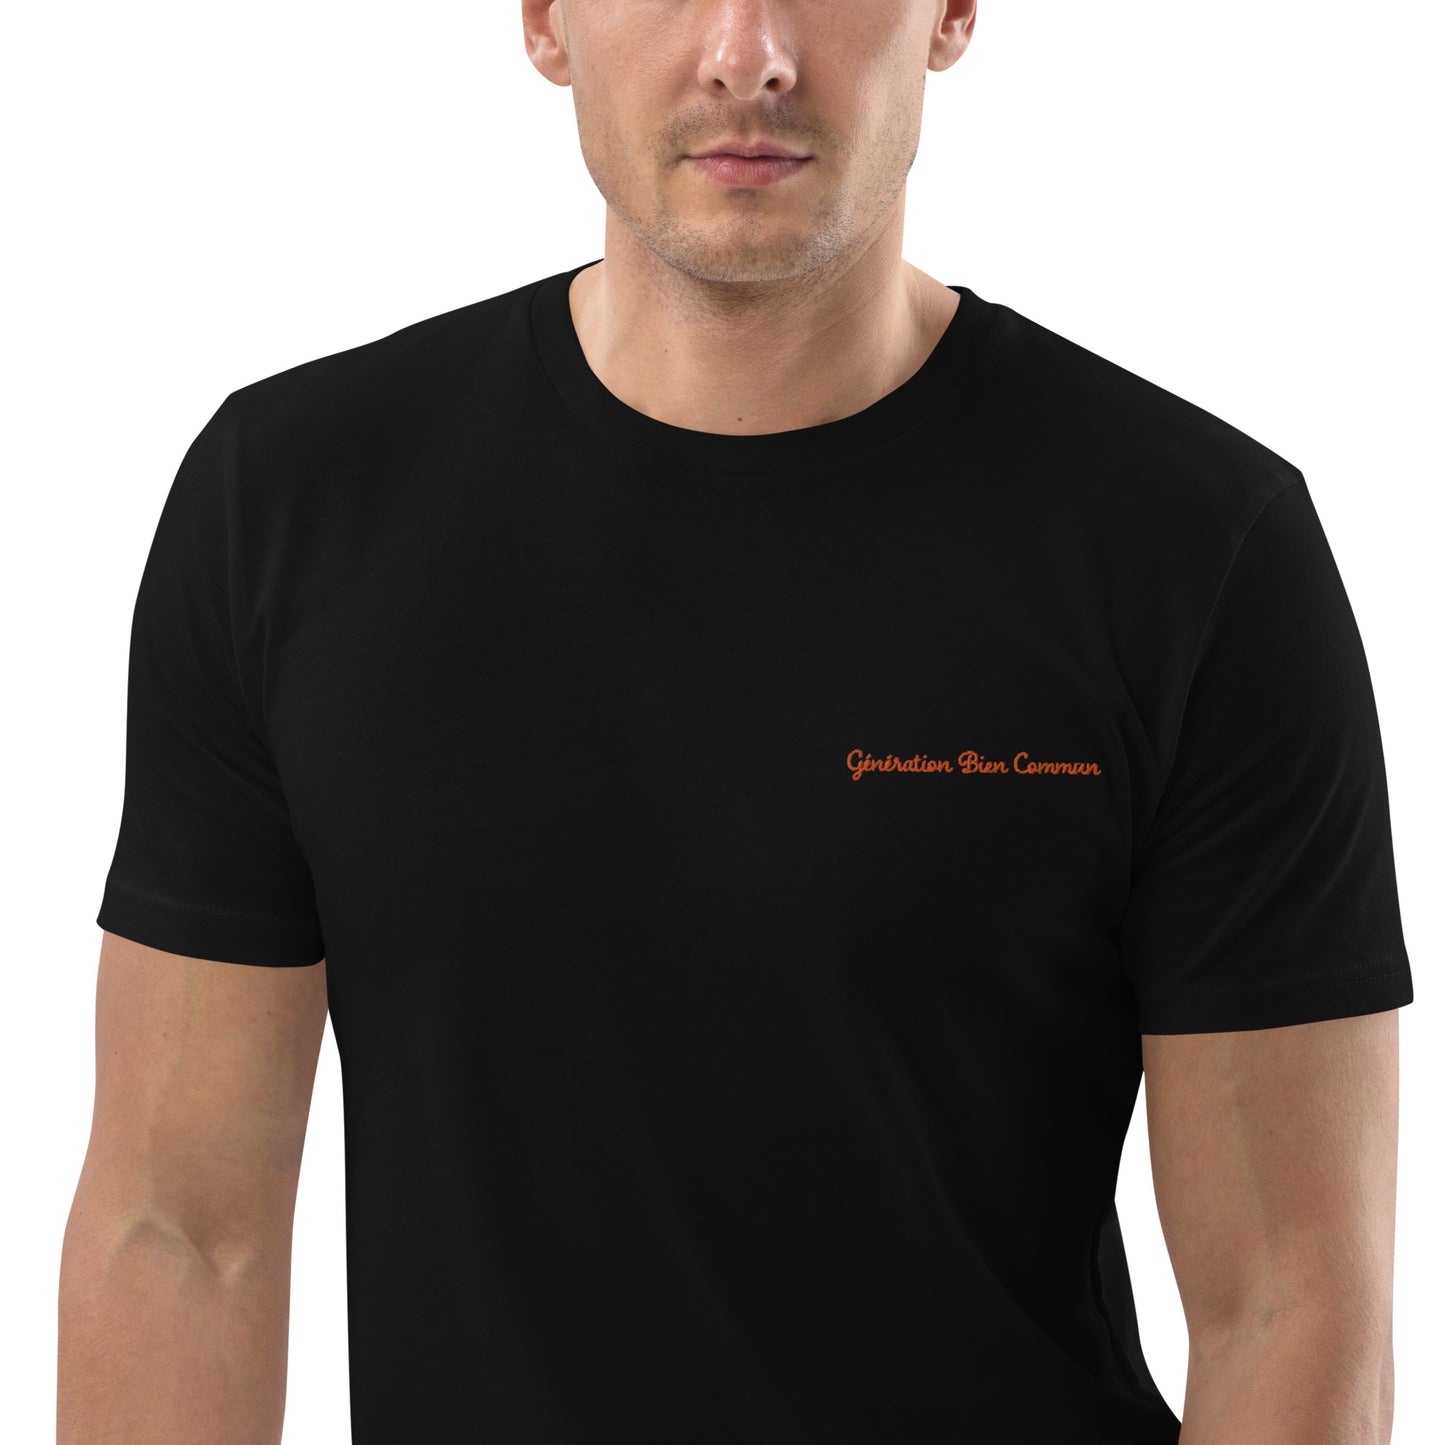 T-shirt " Génération Bien Commun".